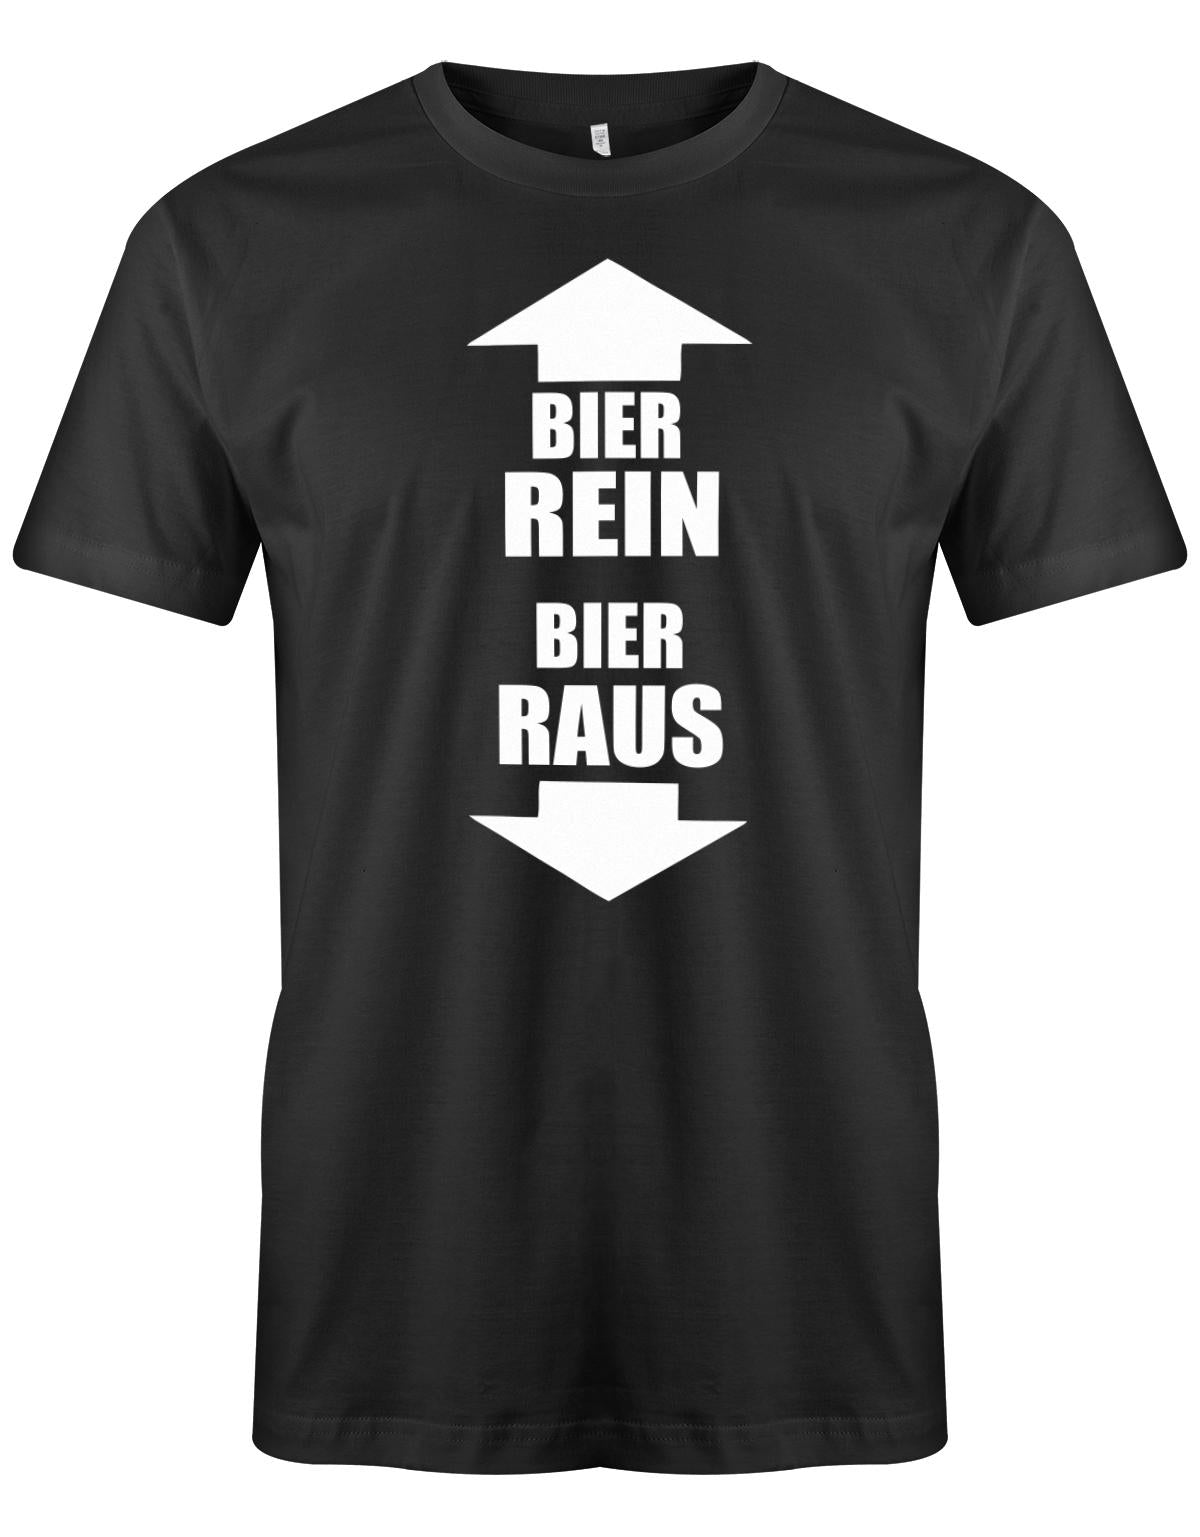 Bier-rein-Bier-raus-Bier-Shirt-Herren-Schwarz